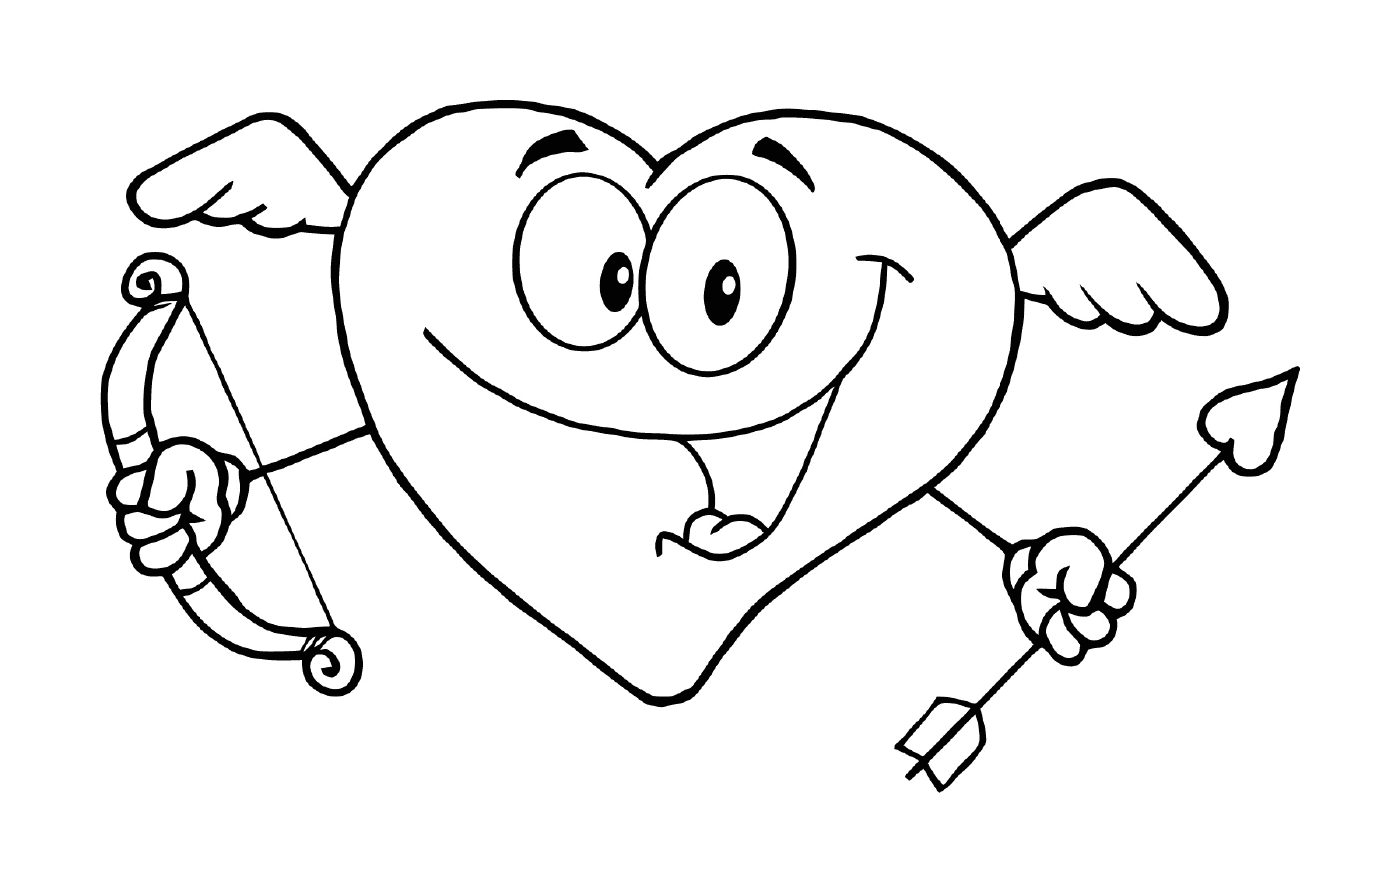  Eine Karikatur mit einem lächelnden Herzen 